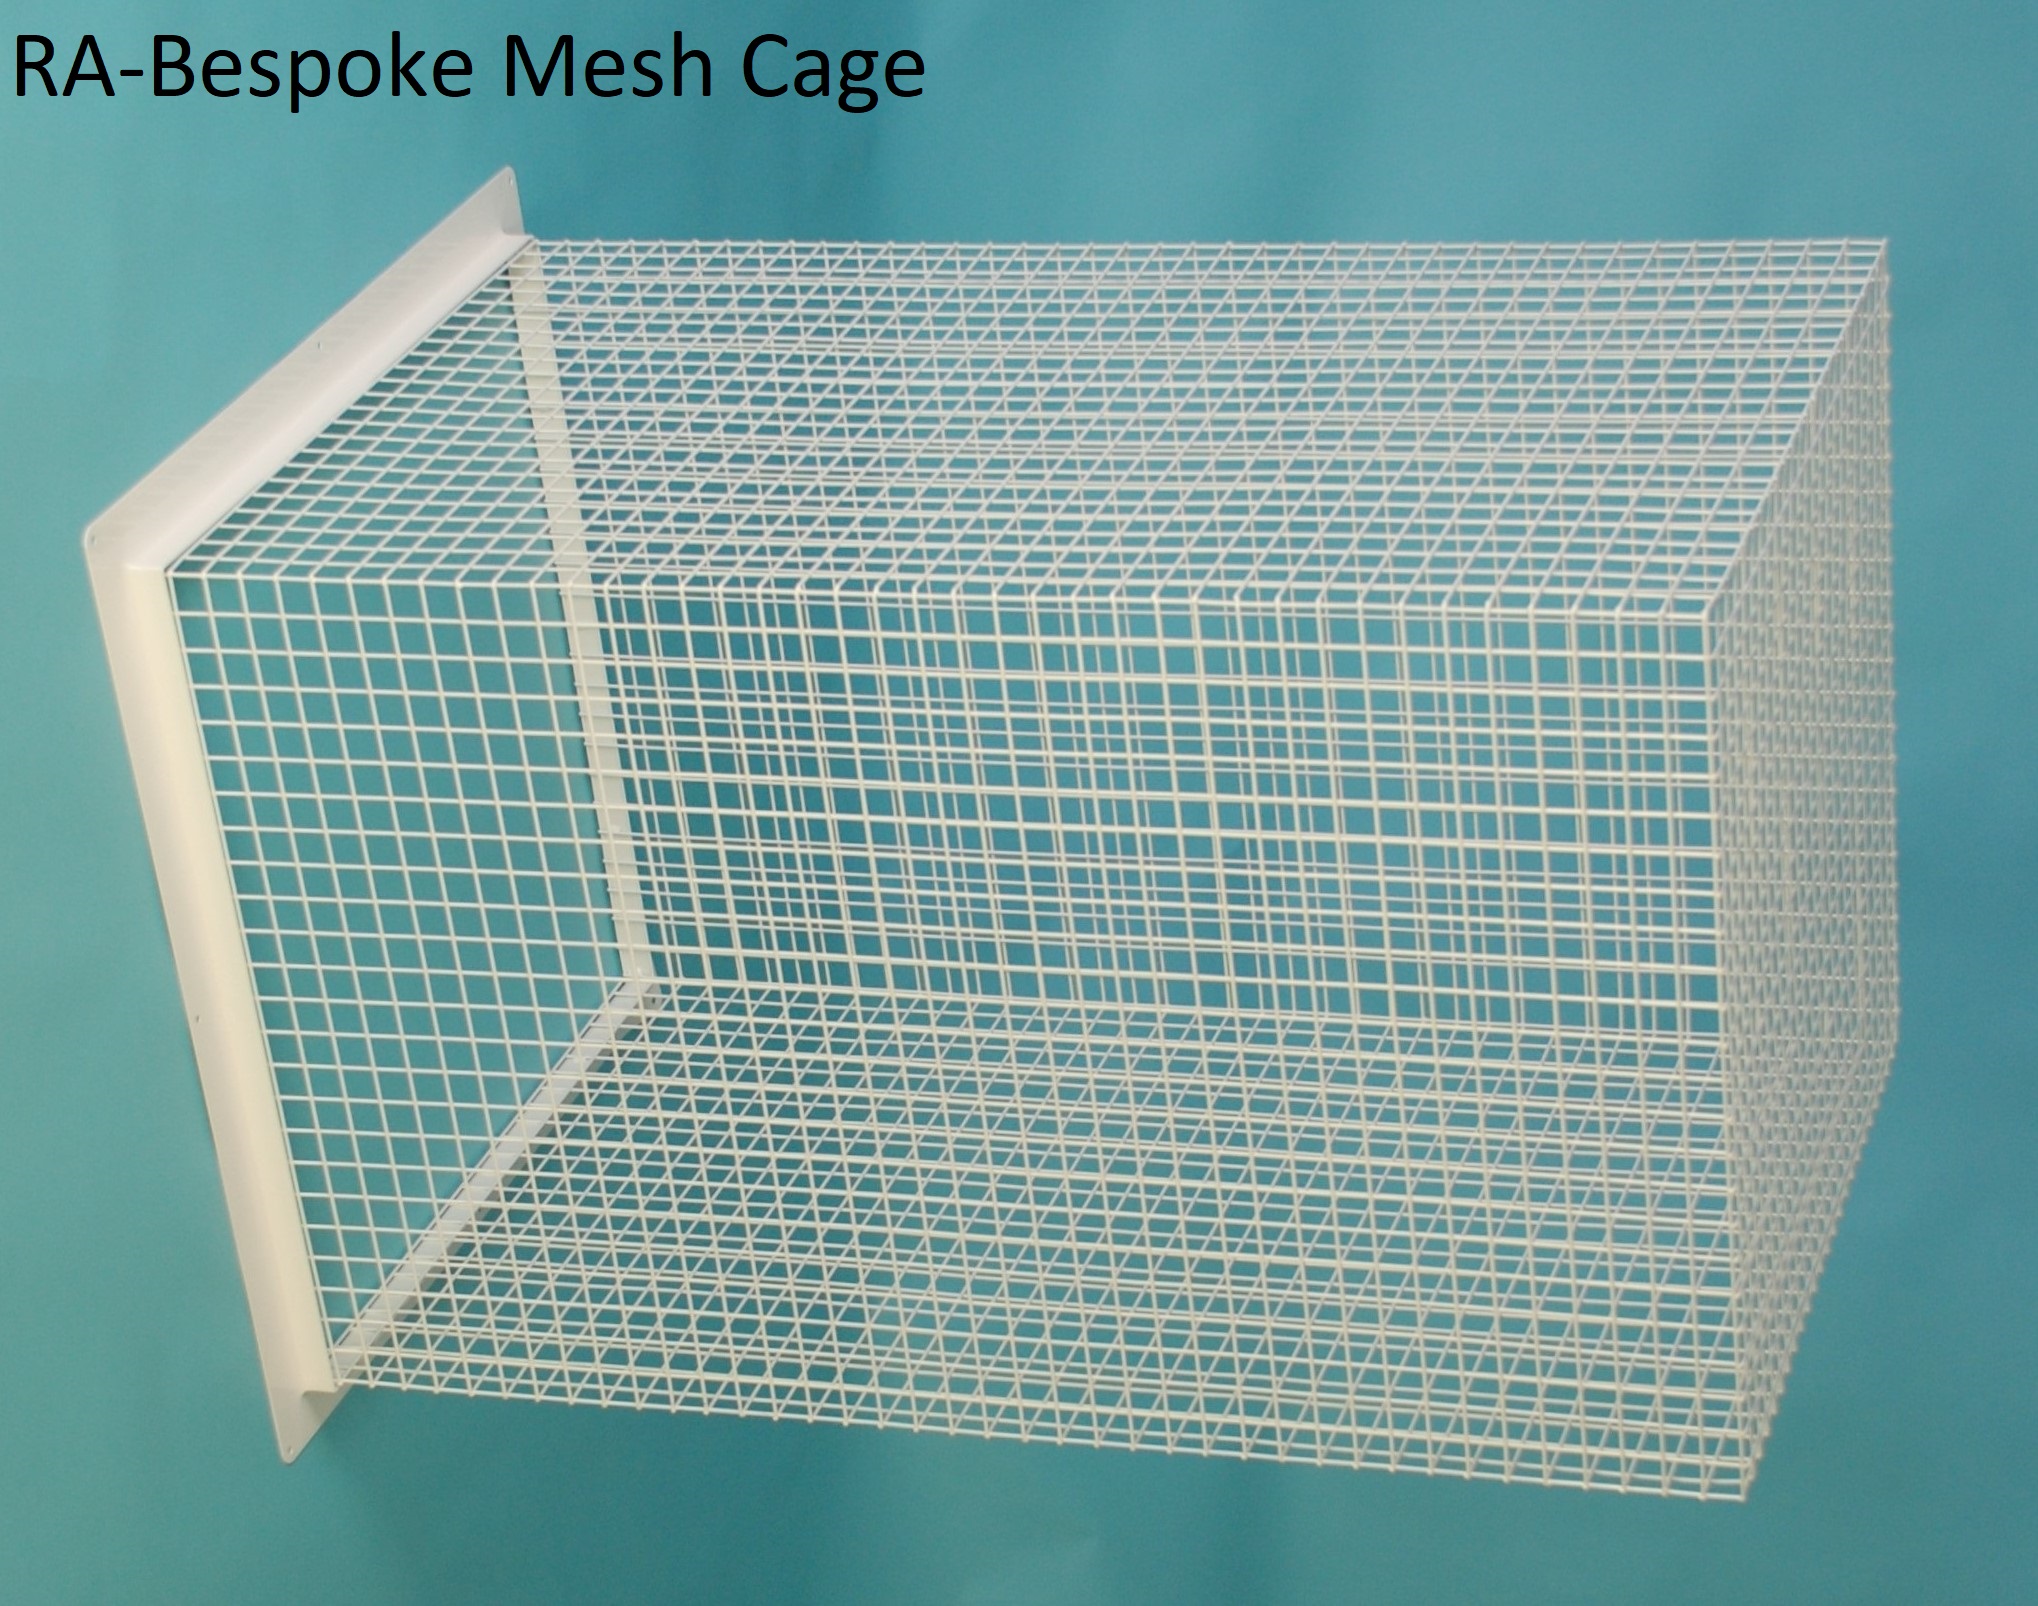 RA Bespoke Mesh Cages for AV Equipment